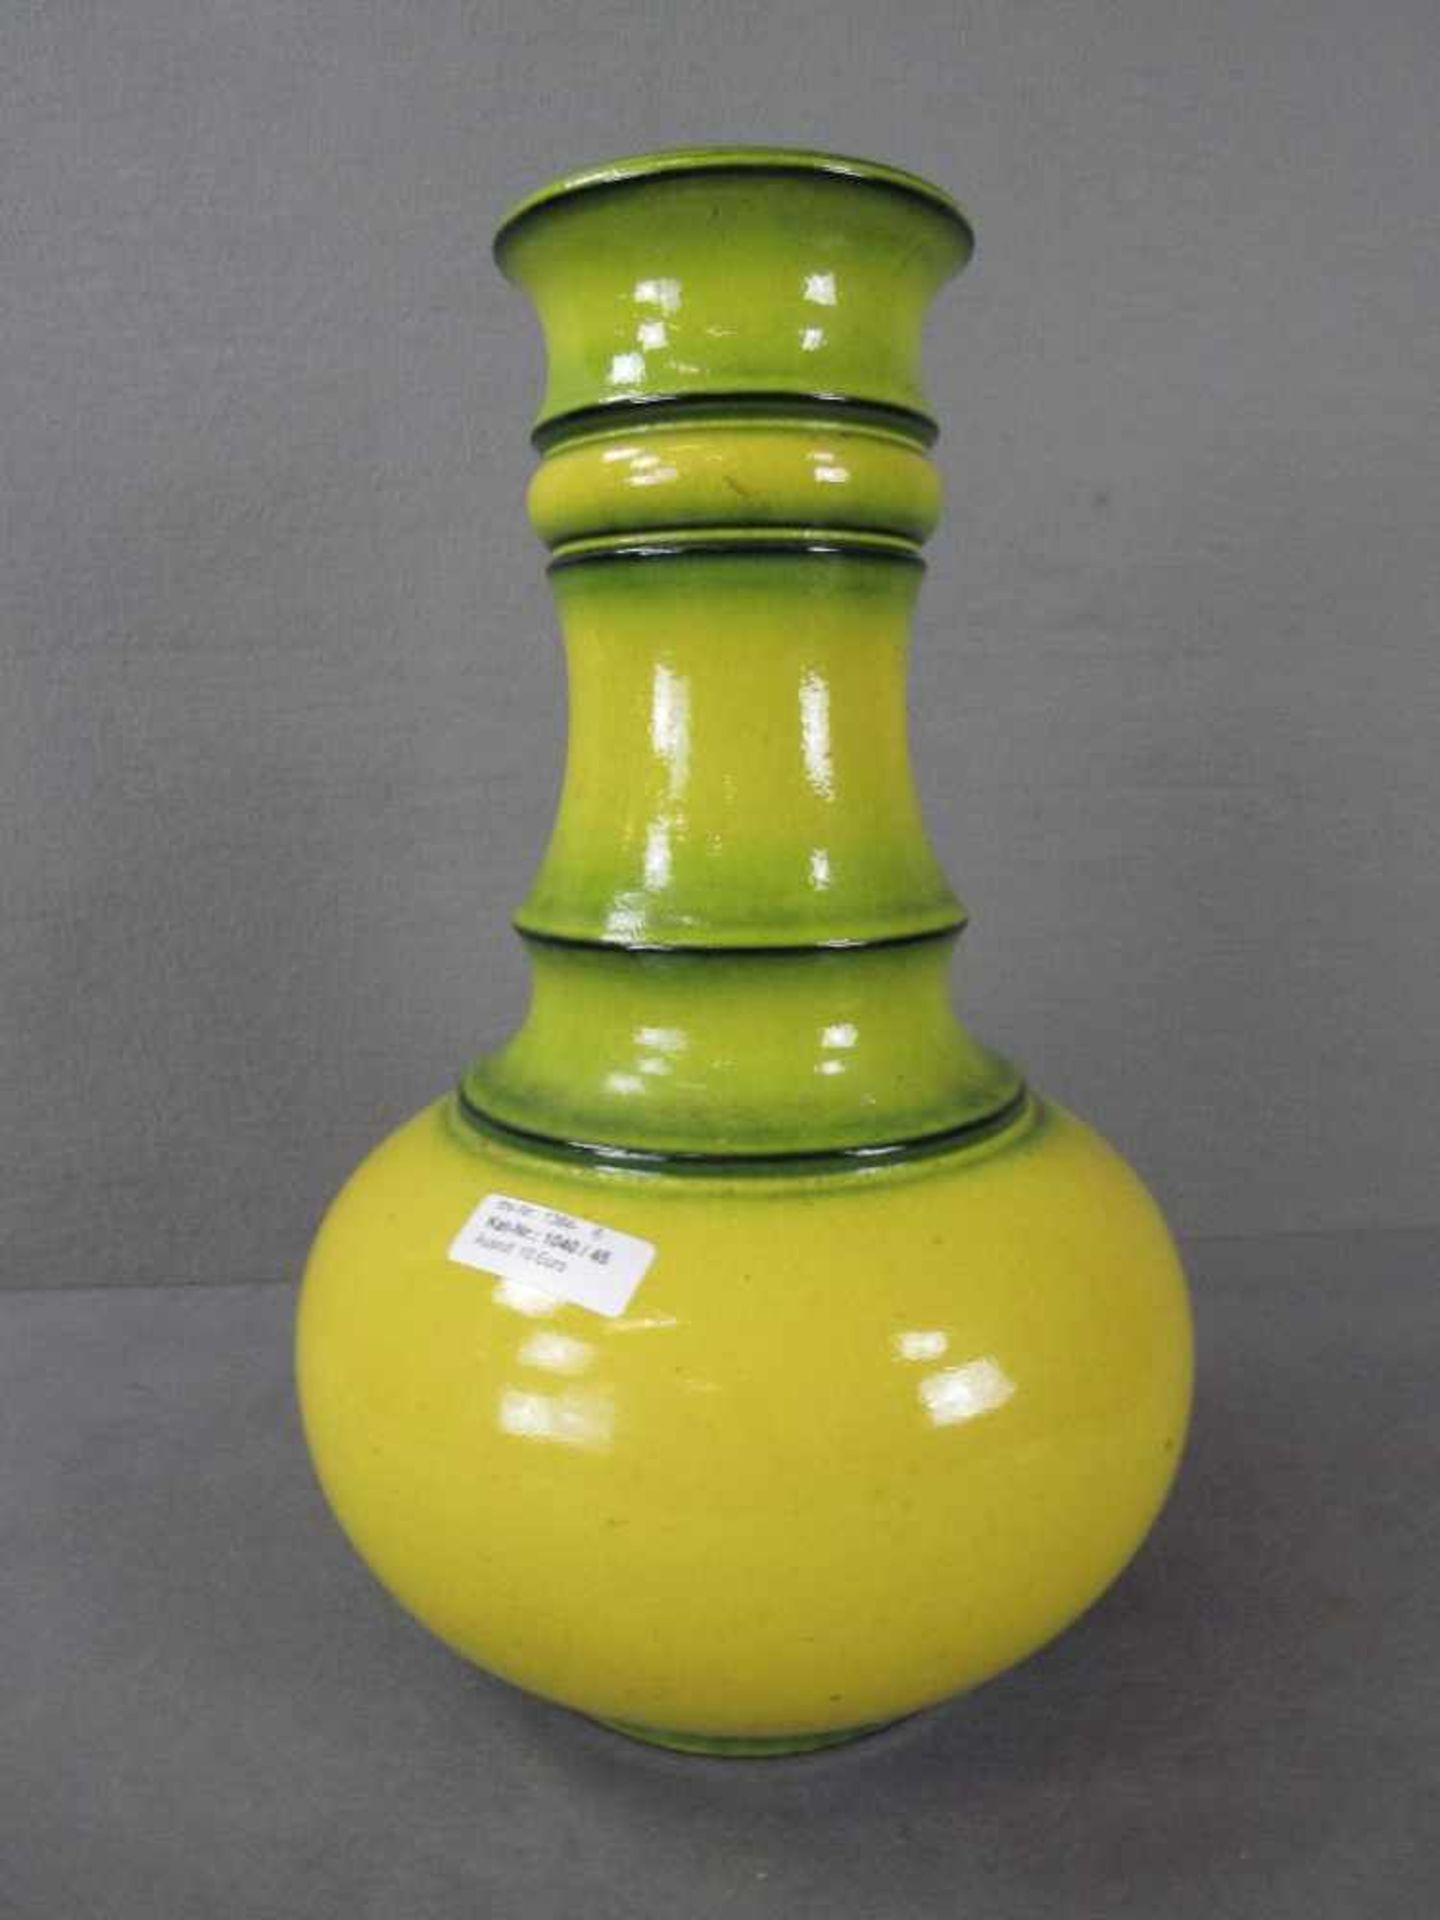 Designer Keramikvase gelb grün lasiert 40cm hoch gemarkt